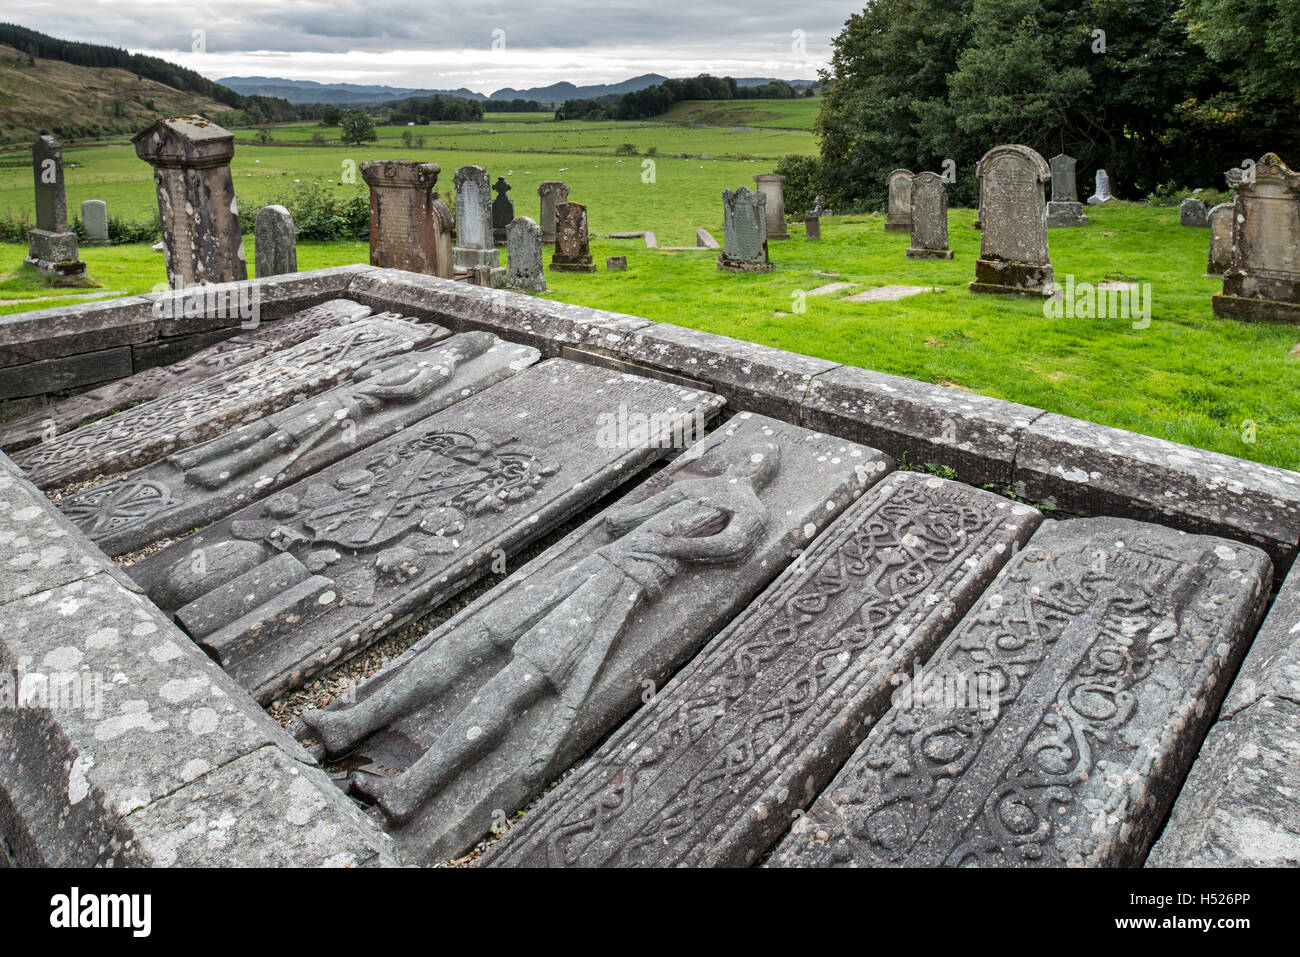 Pierres sculptées Kilmartin, collection de 79 à l'ancienne graveslabs Kilmartin parish church cemetery, Argyll, Scotland Banque D'Images